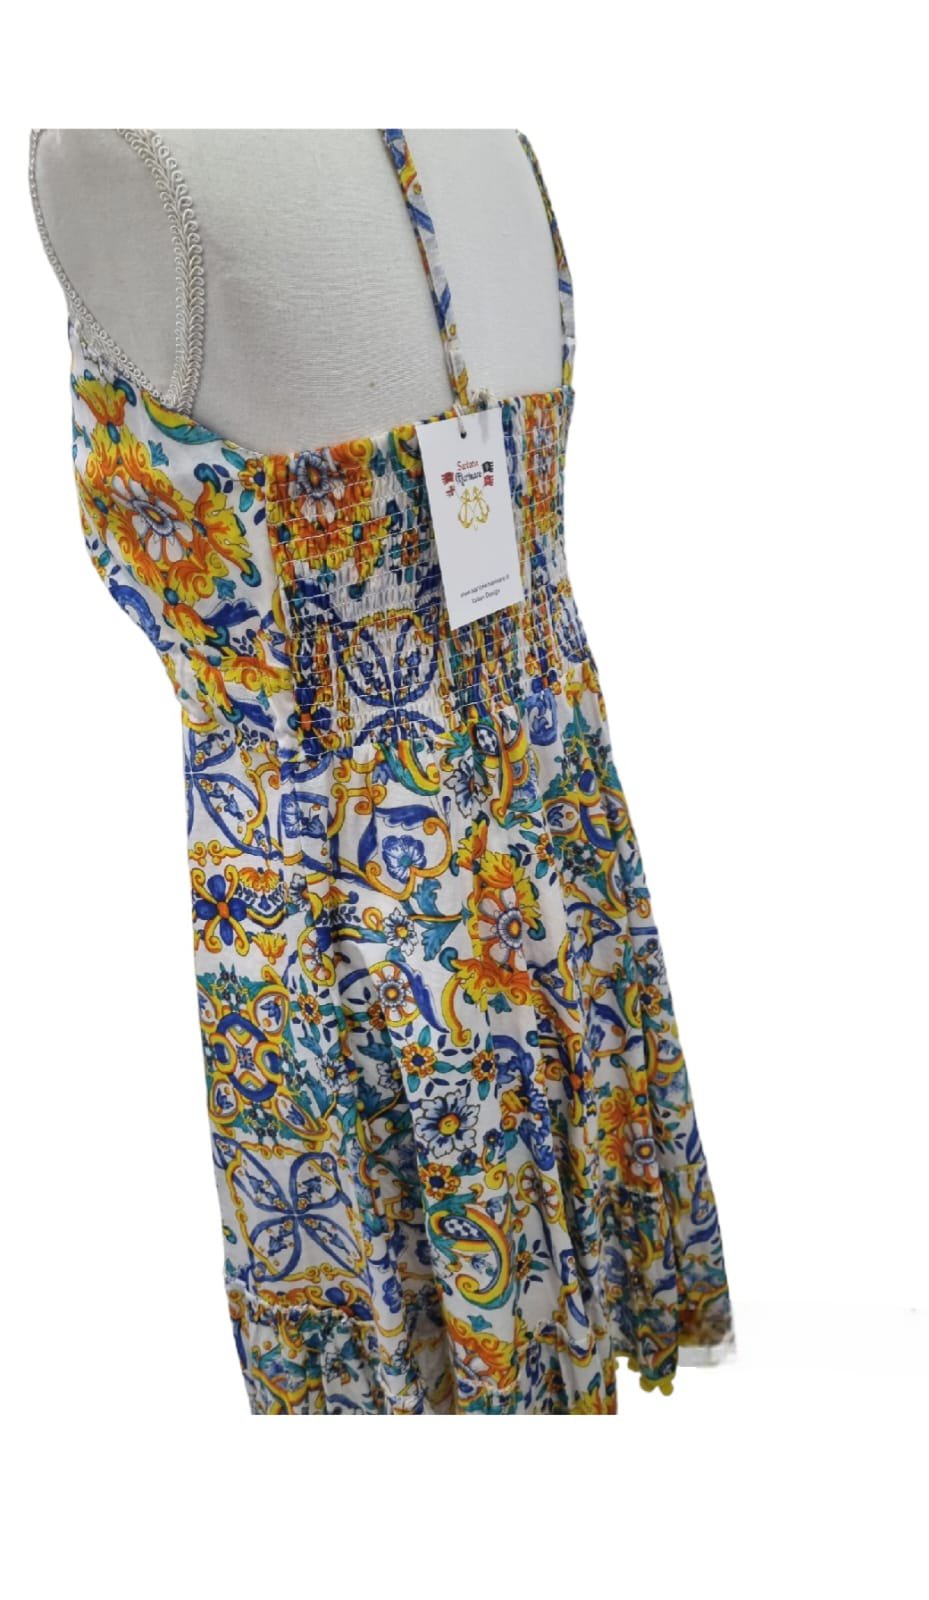 Kurzes Kleid aus Baumwolle 100% mit verstellbaren Trägern, elastischem Rücken und Bommel am Ende. Vietri-Muster in Einheitsgröße